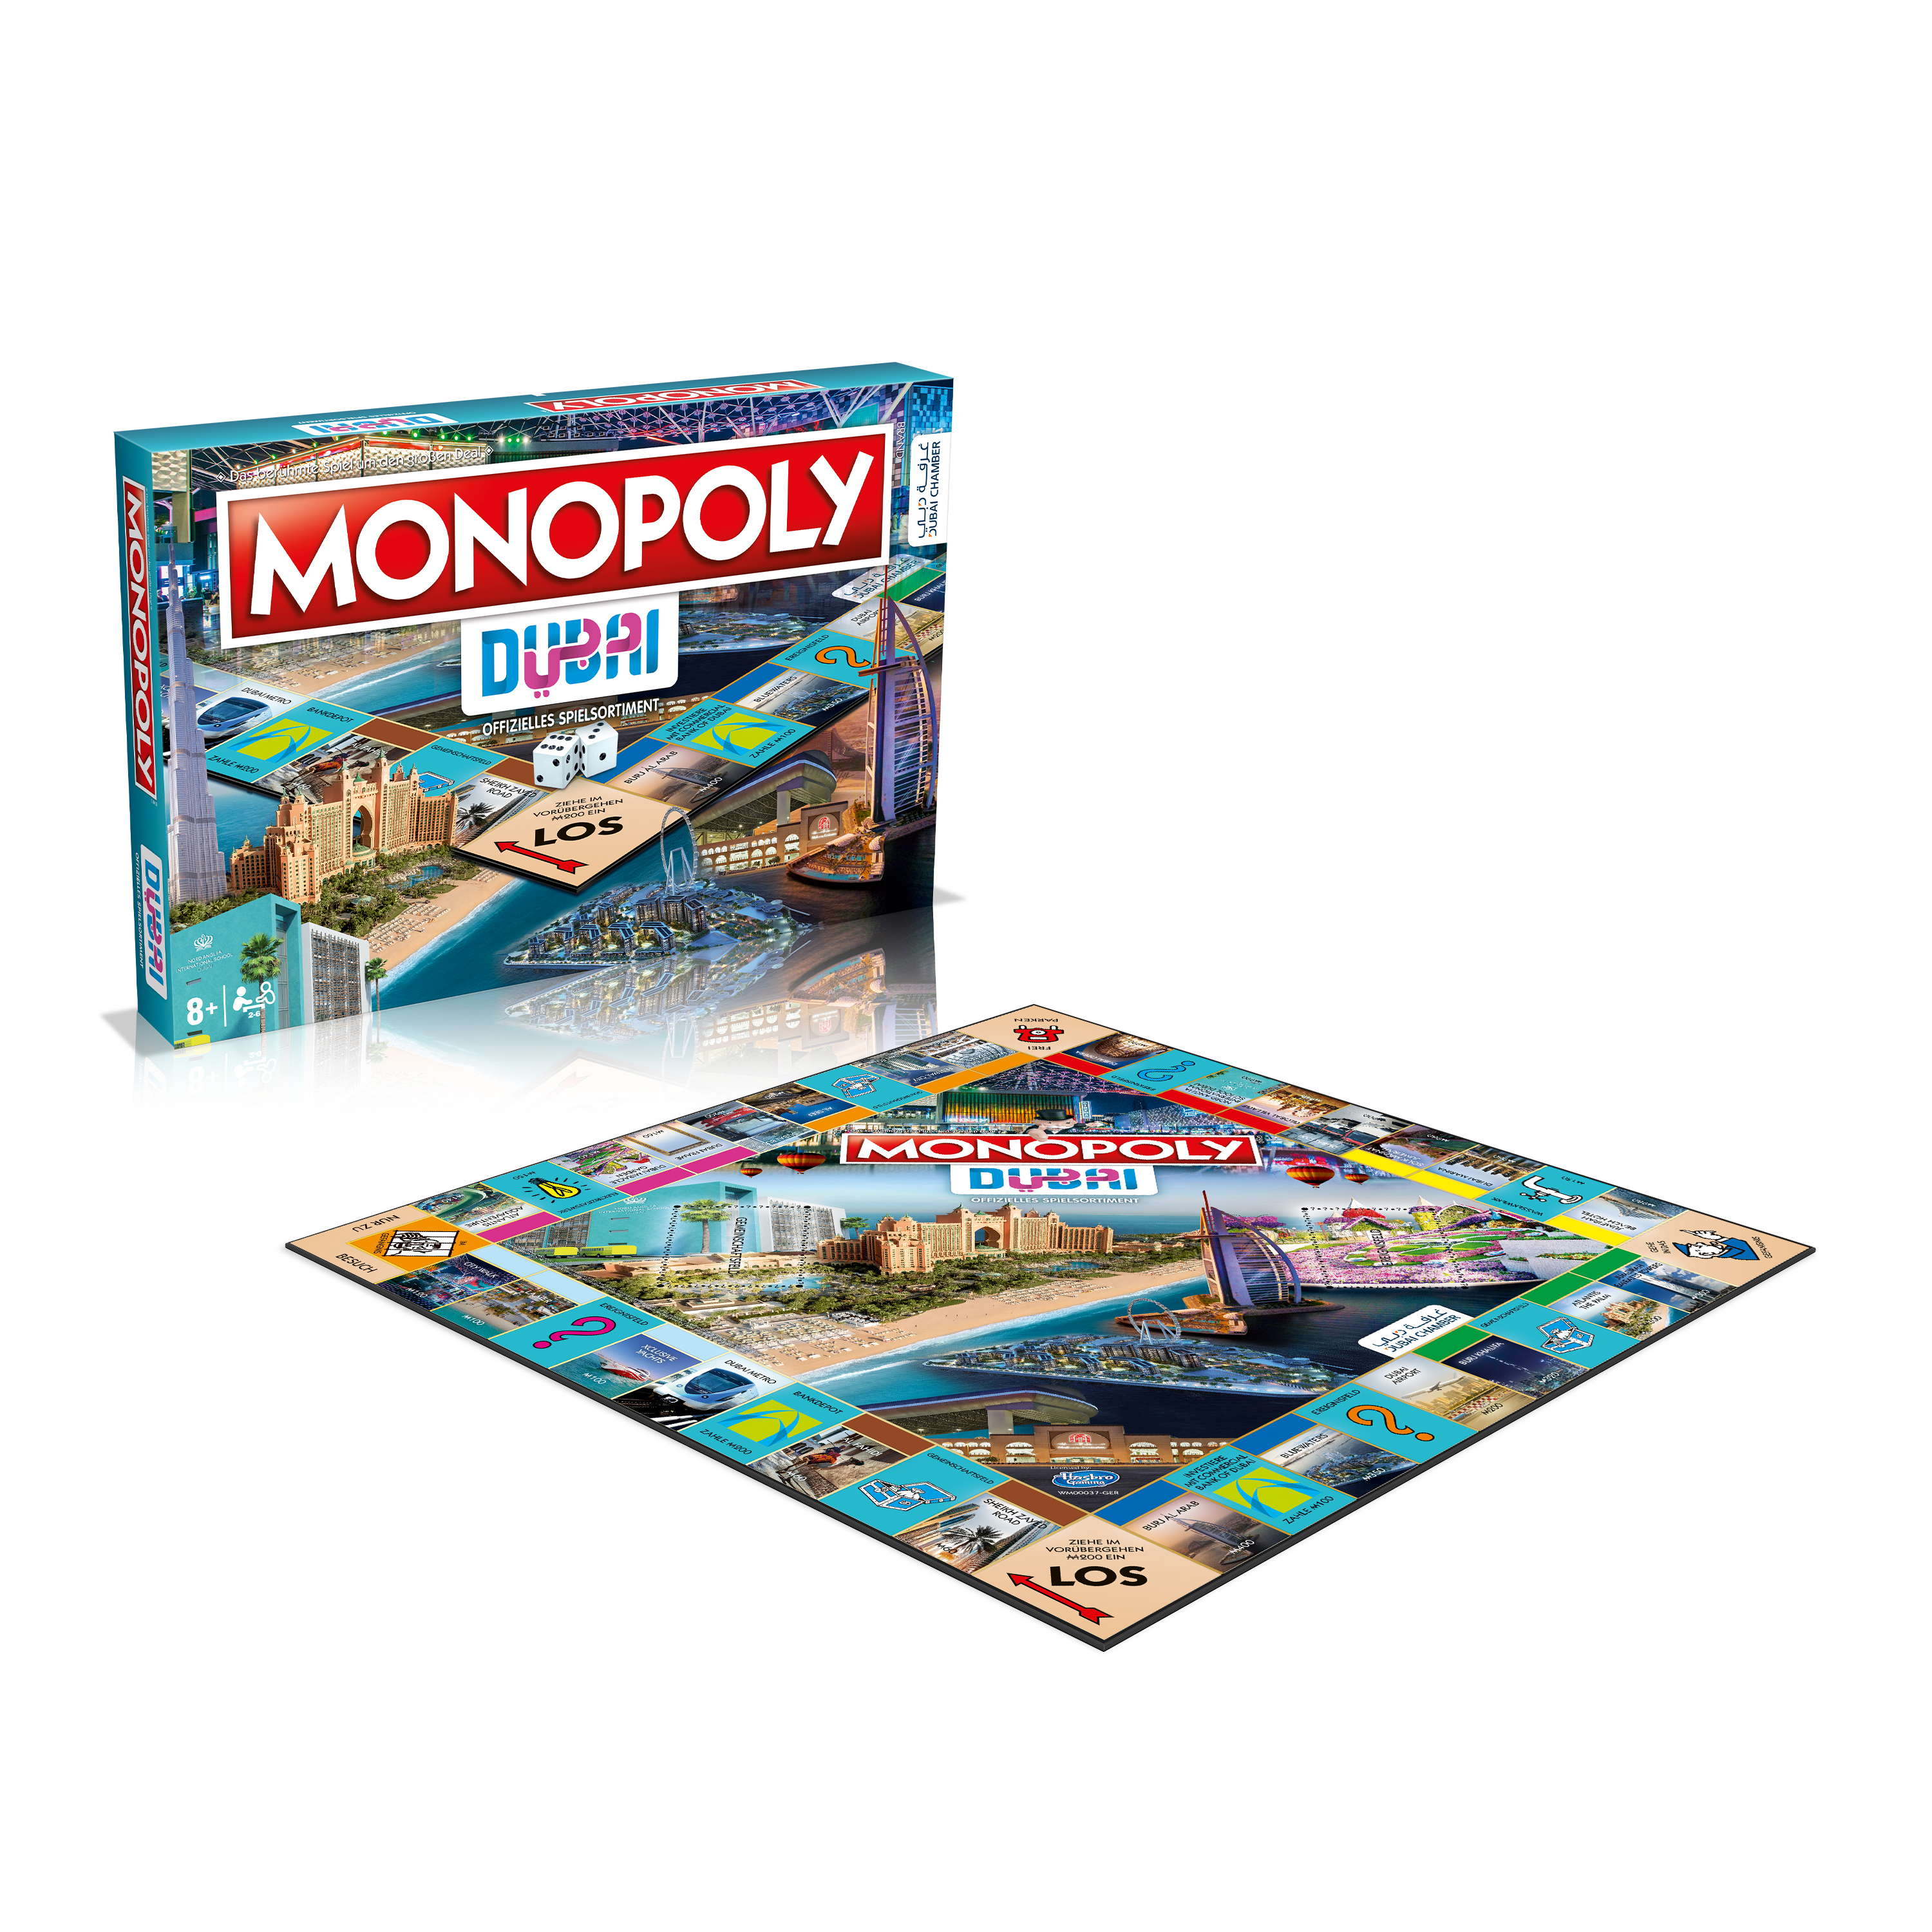 Monopoly - Dubai